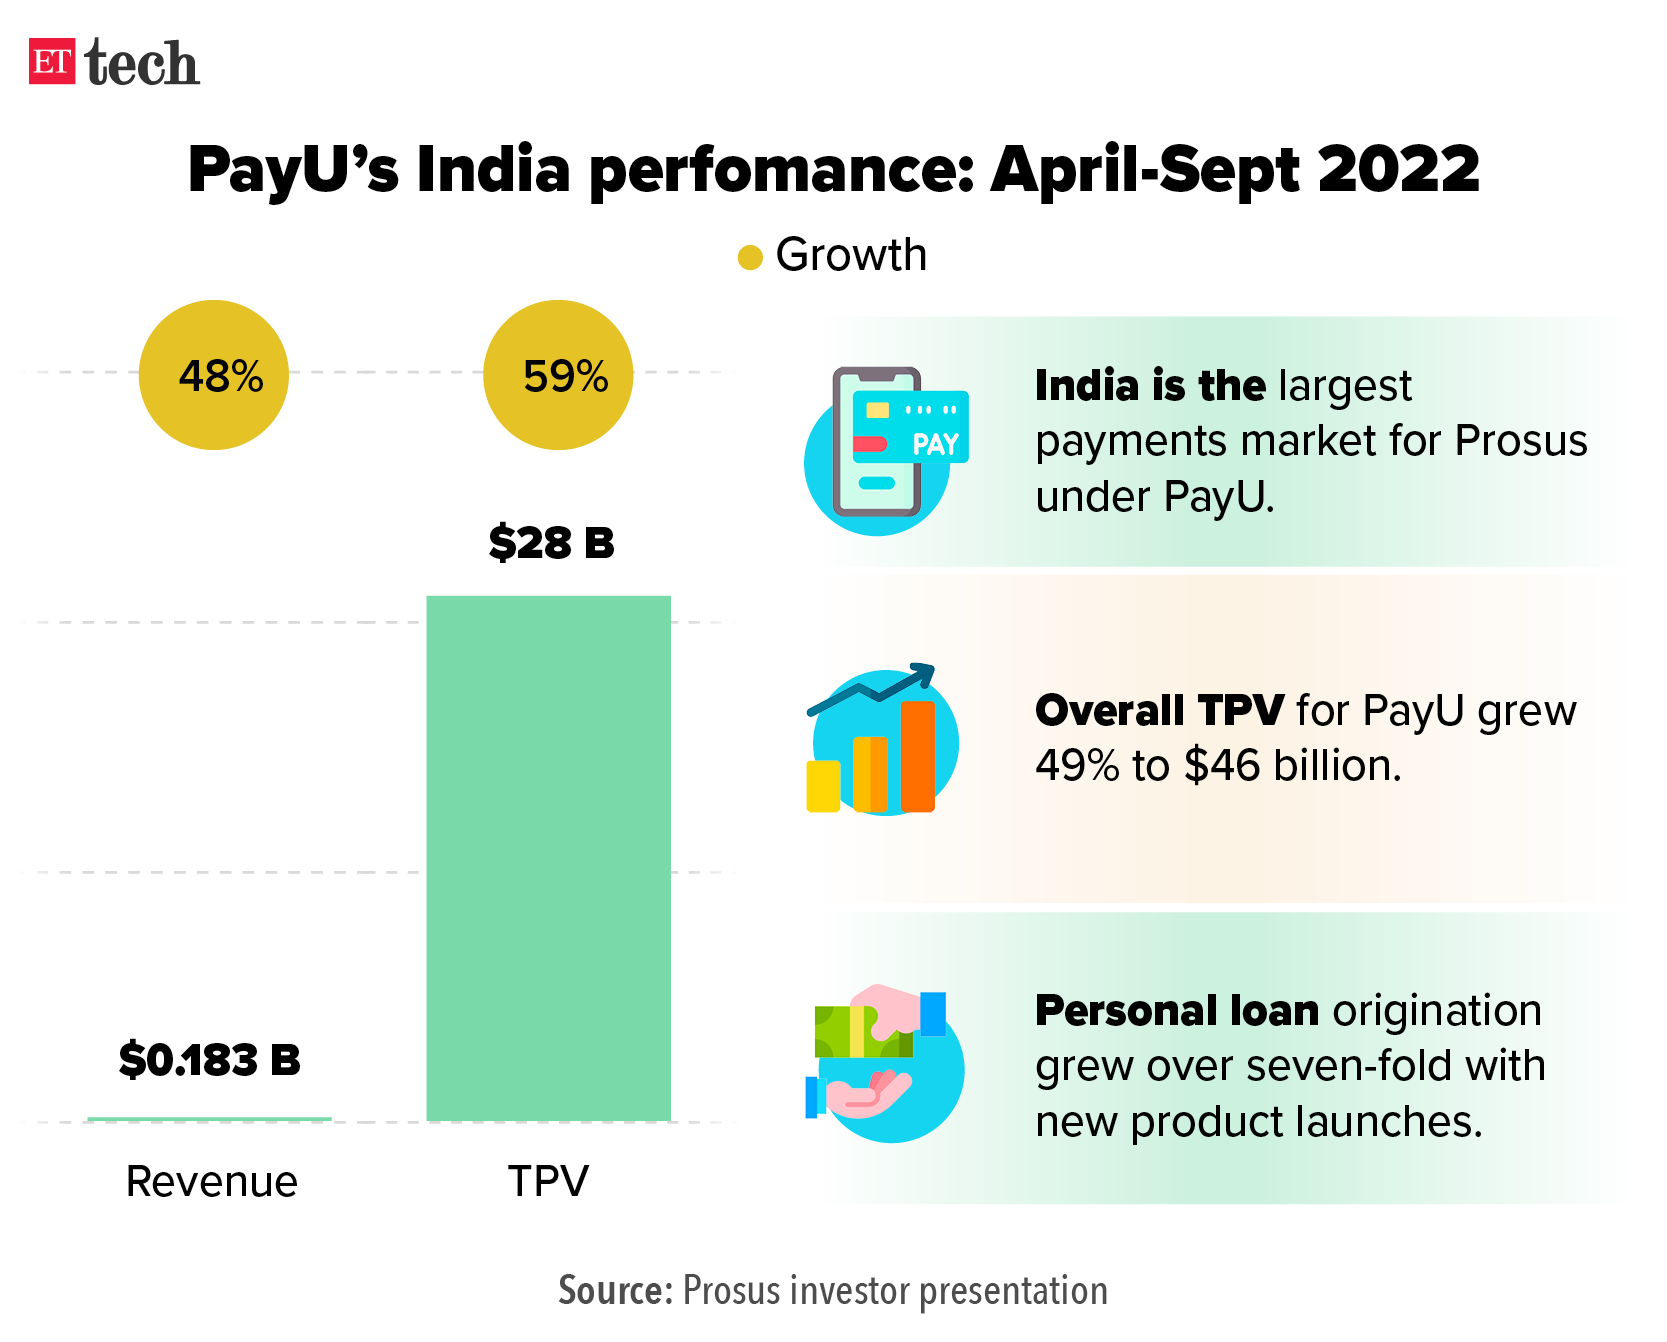 Prestazioni di PayU India